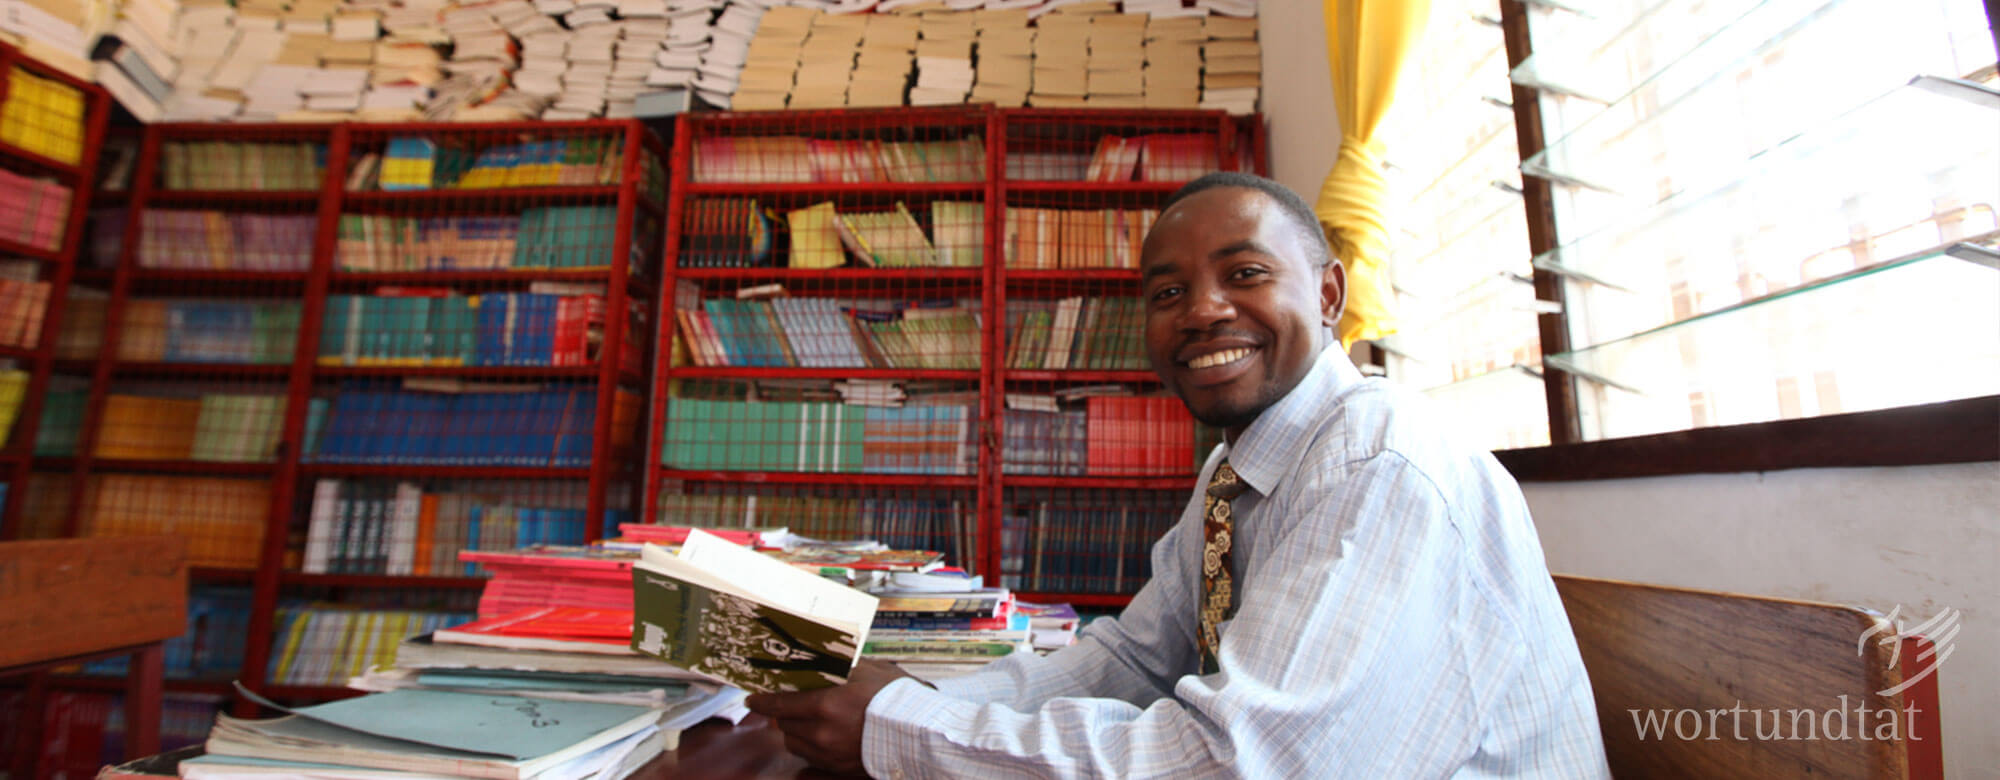 Mann in einem Raum mit Regalen voller Schulbücher